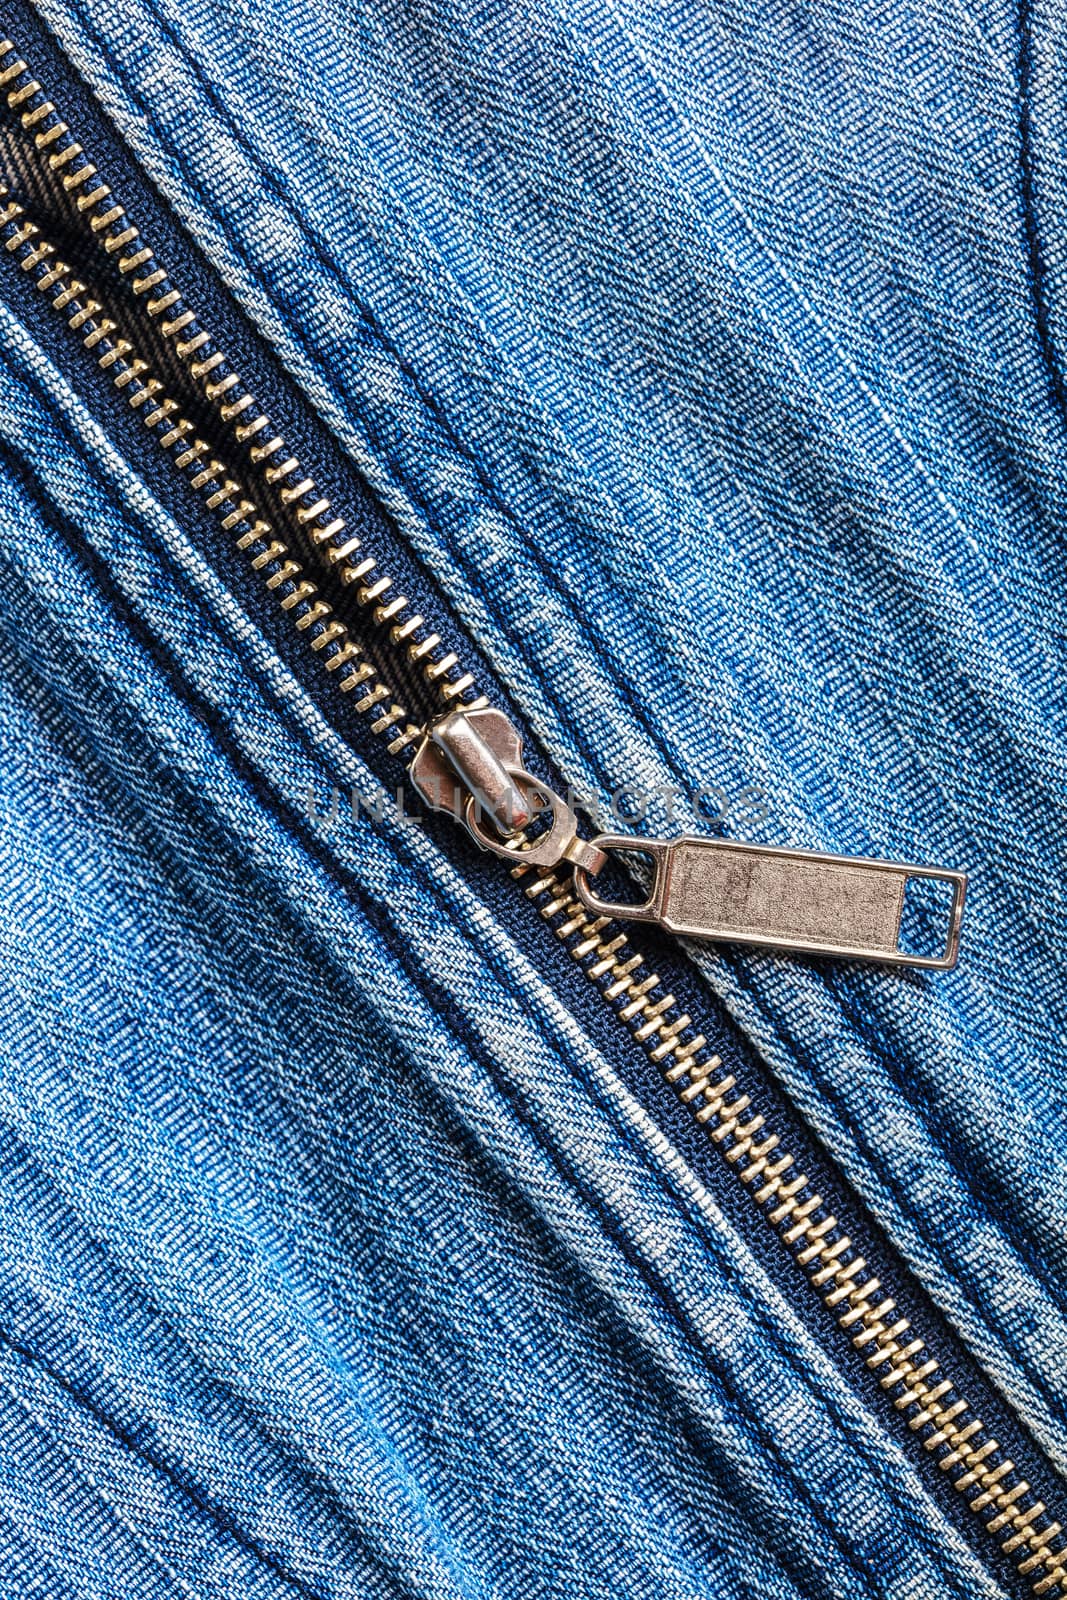 denim and a zipper texture by MegaArt